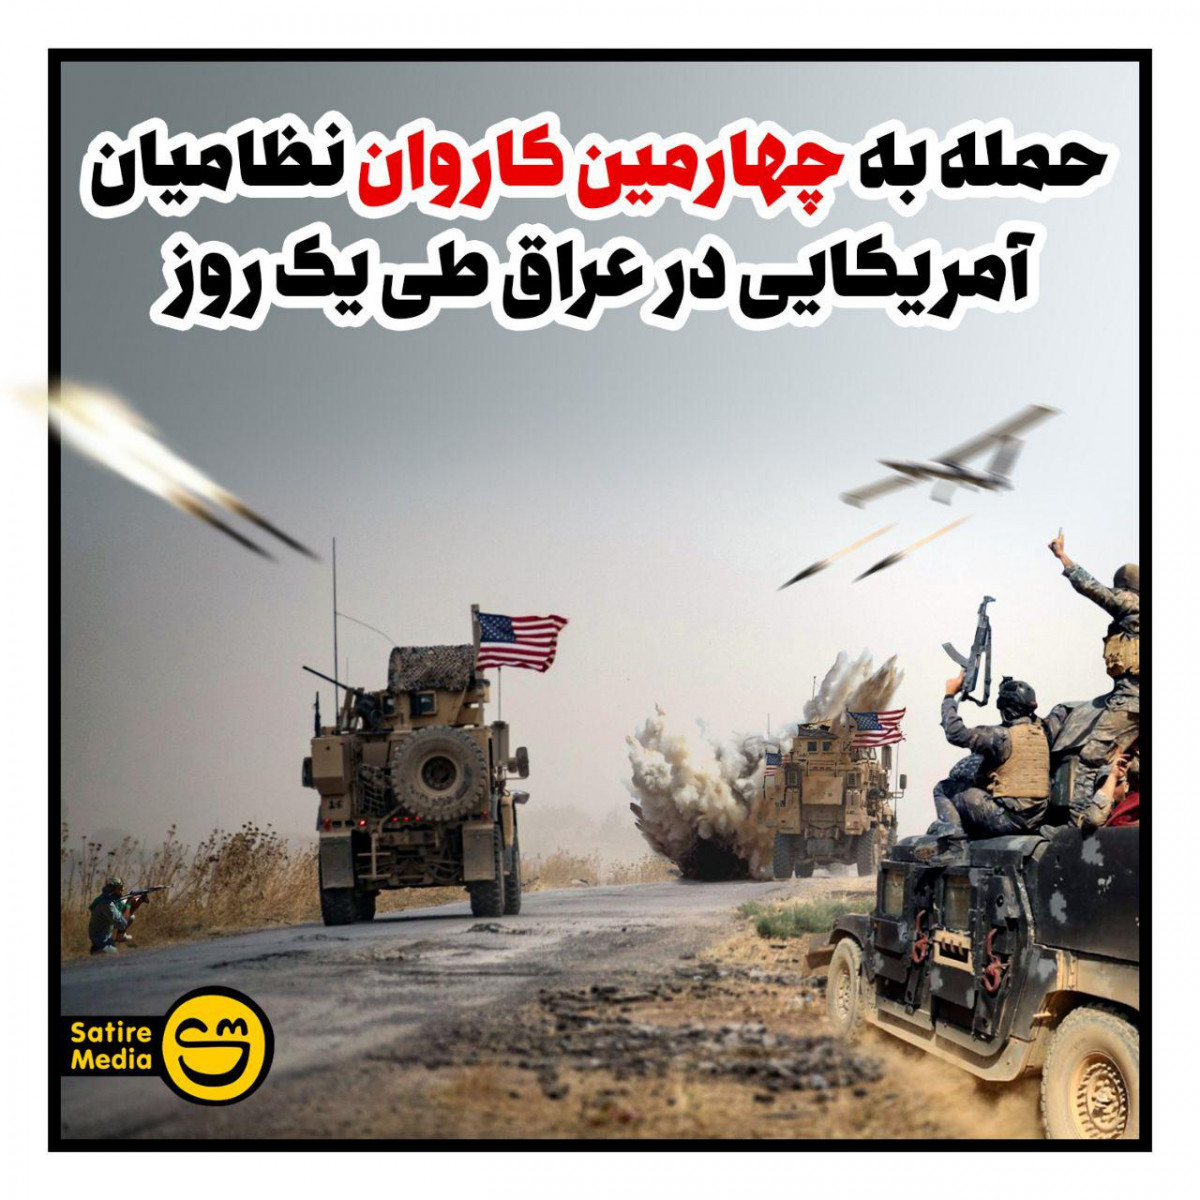 پوستر: حمله به چهارمین کاروان نظامیان آمریکایی در عراق طی یک روز